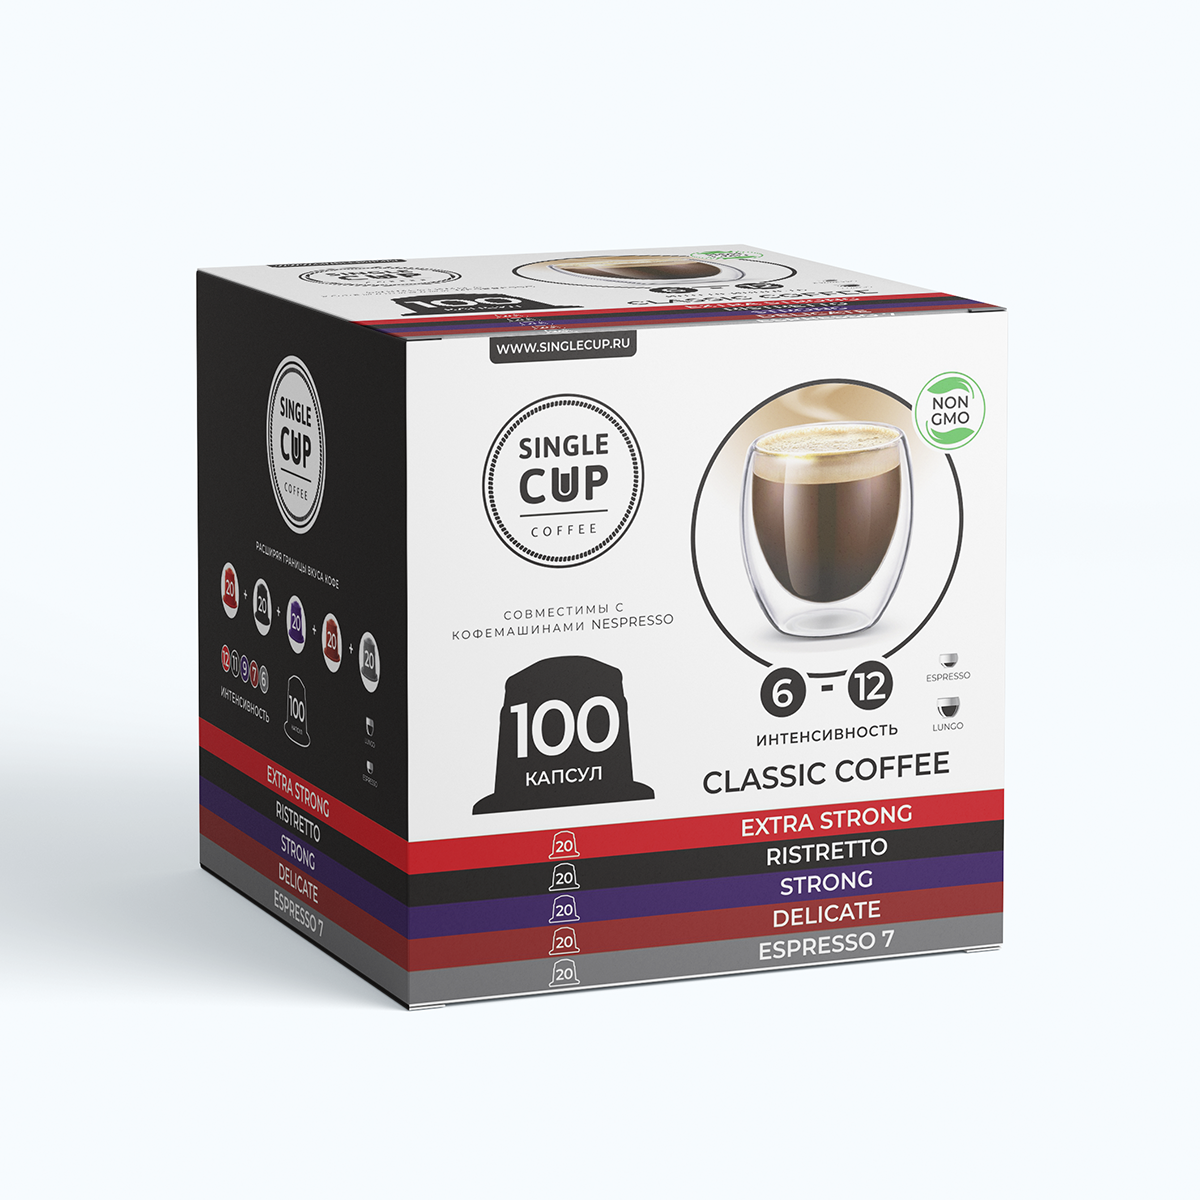 Кофе в капсулах Single Cup Coffee Nespresso формат Classic Coffee, 100 шт